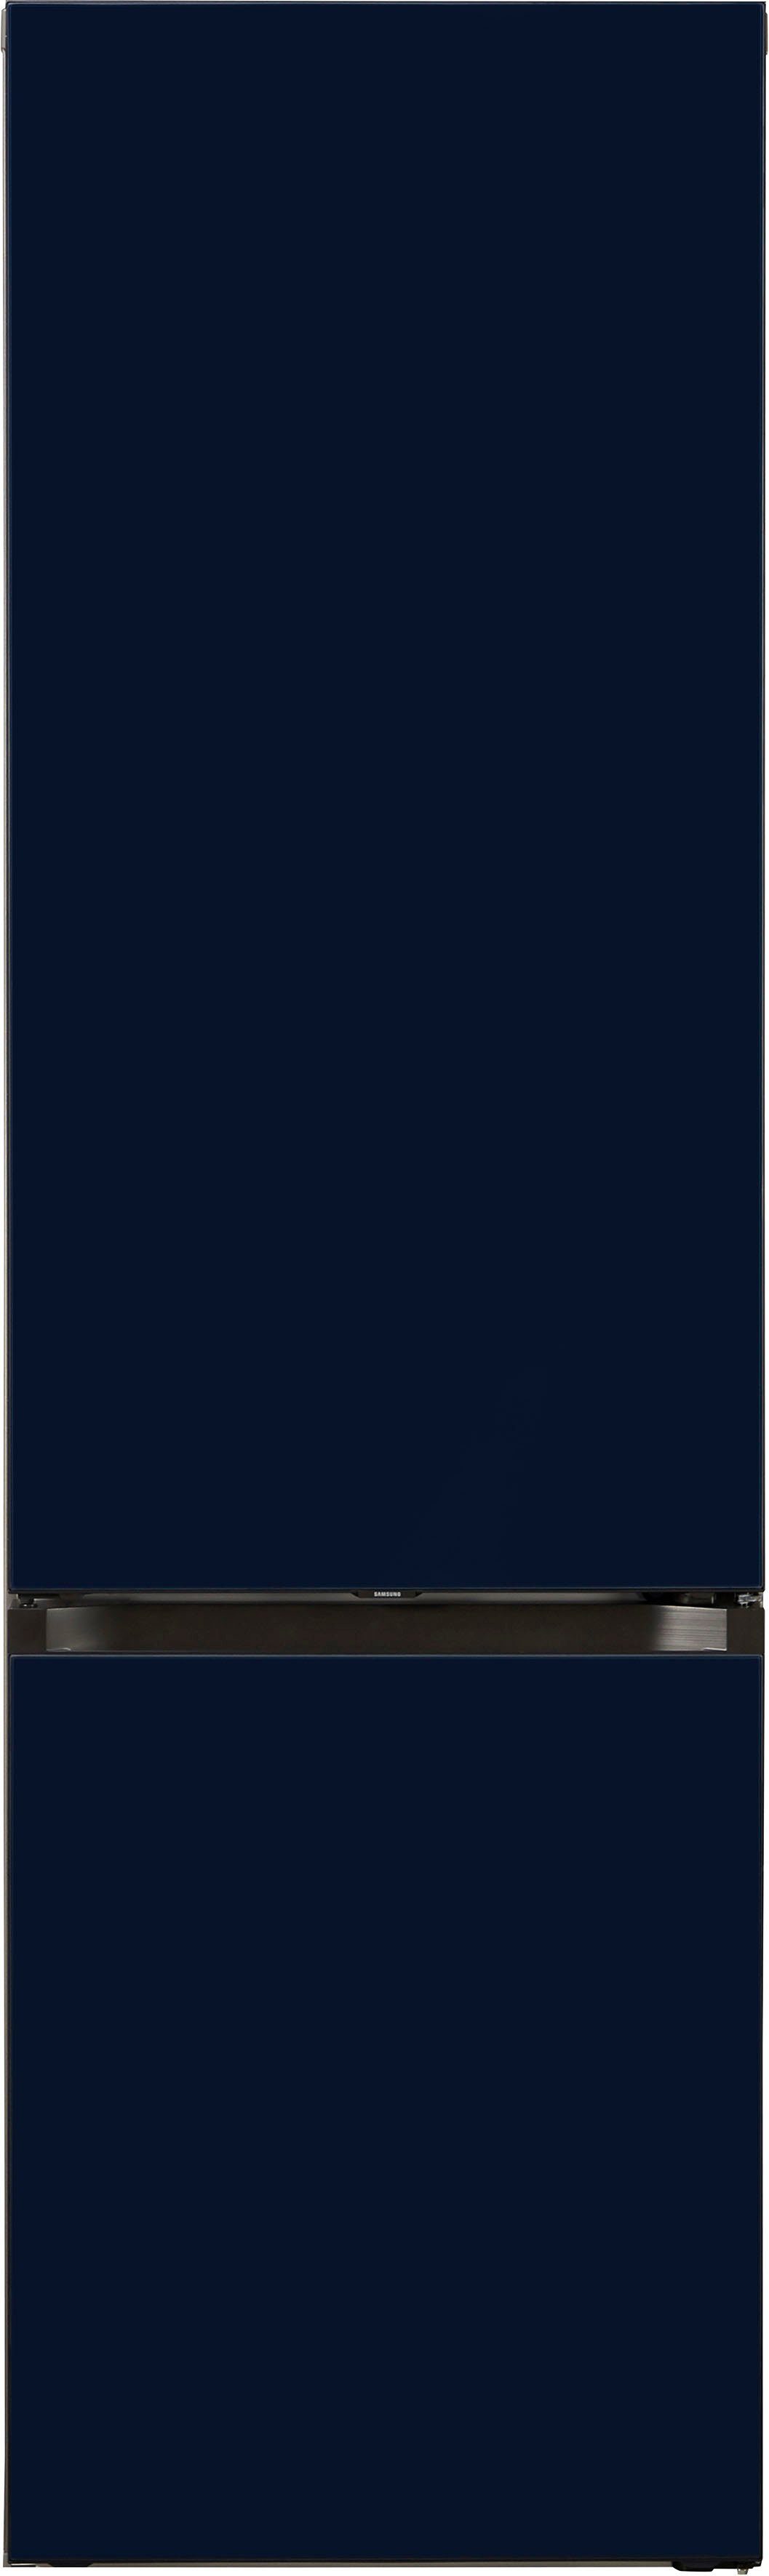 Samsung cm 59,5 cm breit RL38A6B6C41, Bespoke Kühl-/Gefrierkombination 203 hoch,